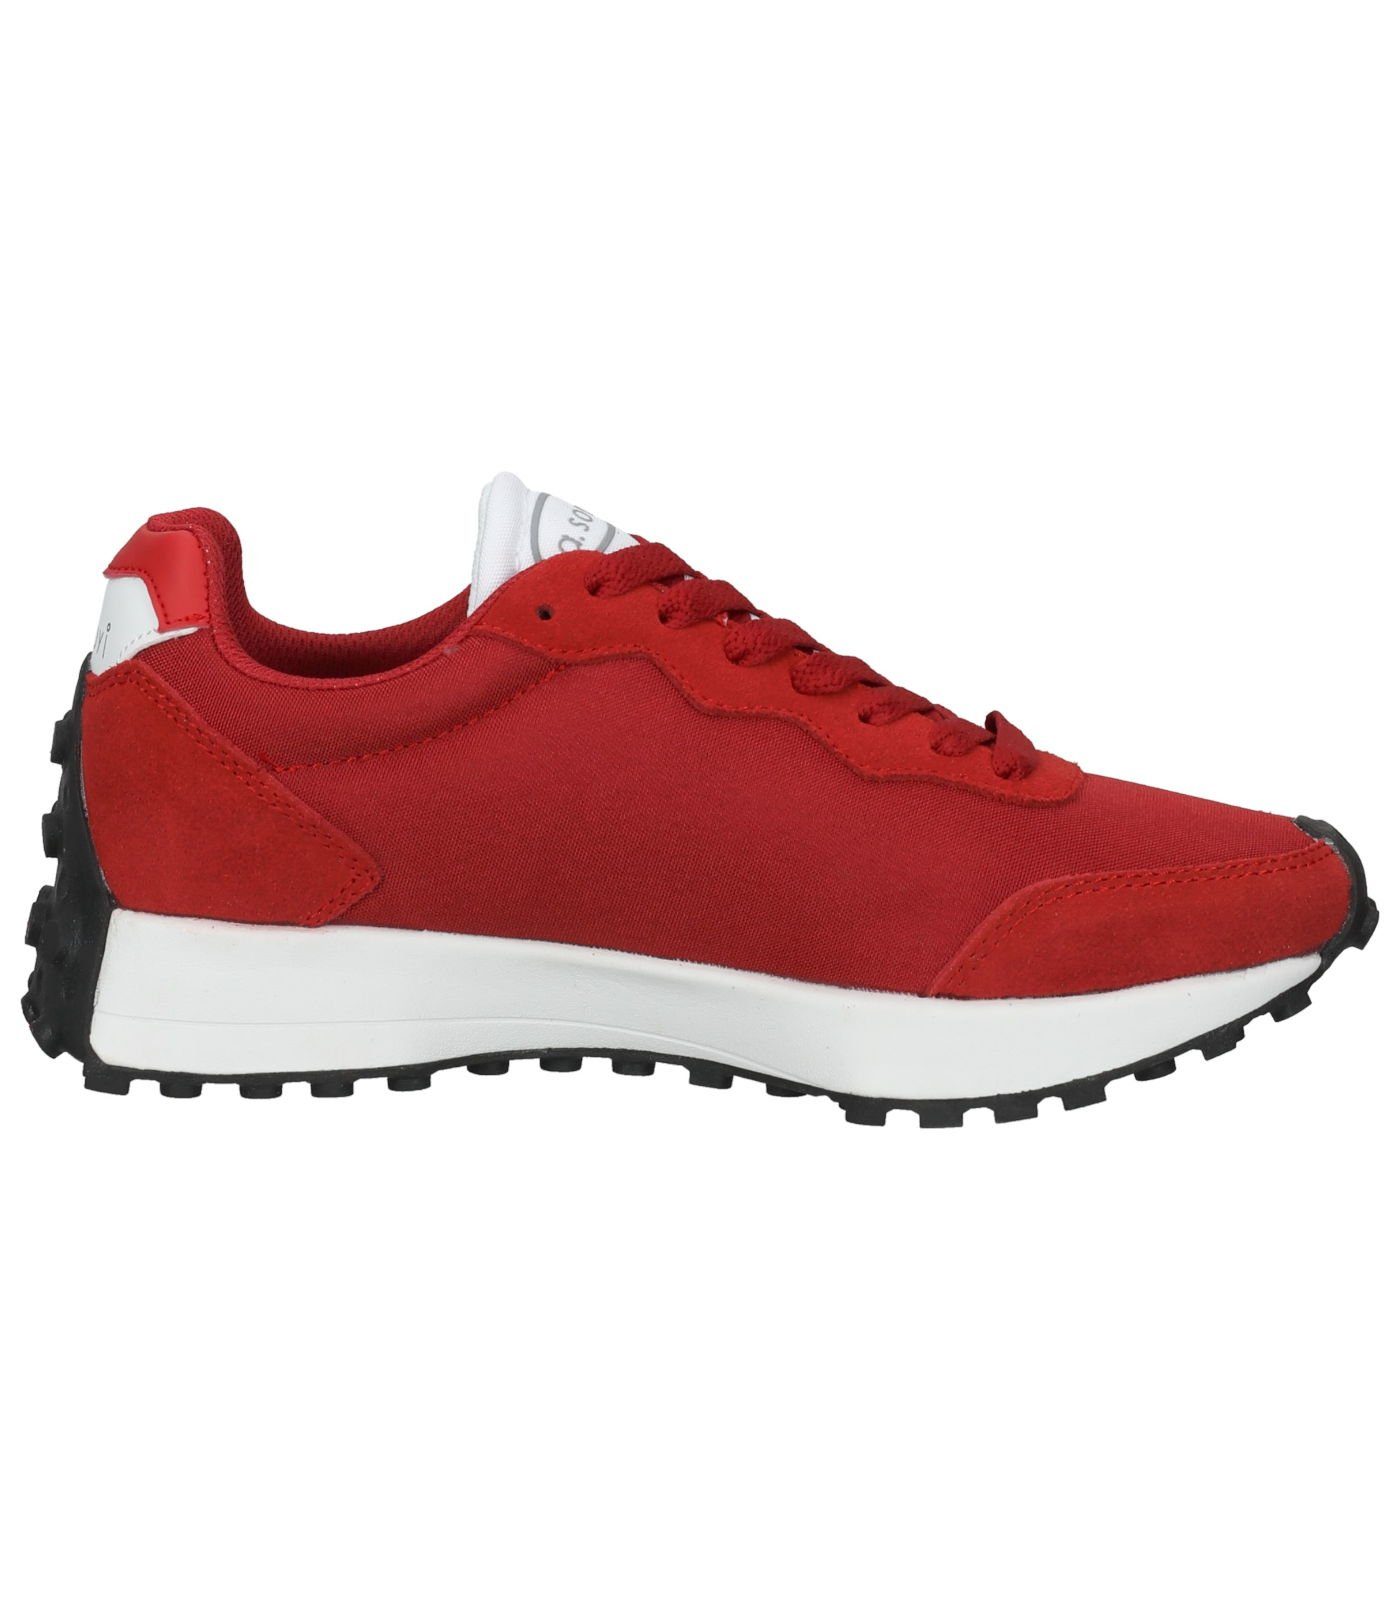 a. soyi Sneaker Rot Sneaker Leder/Textil